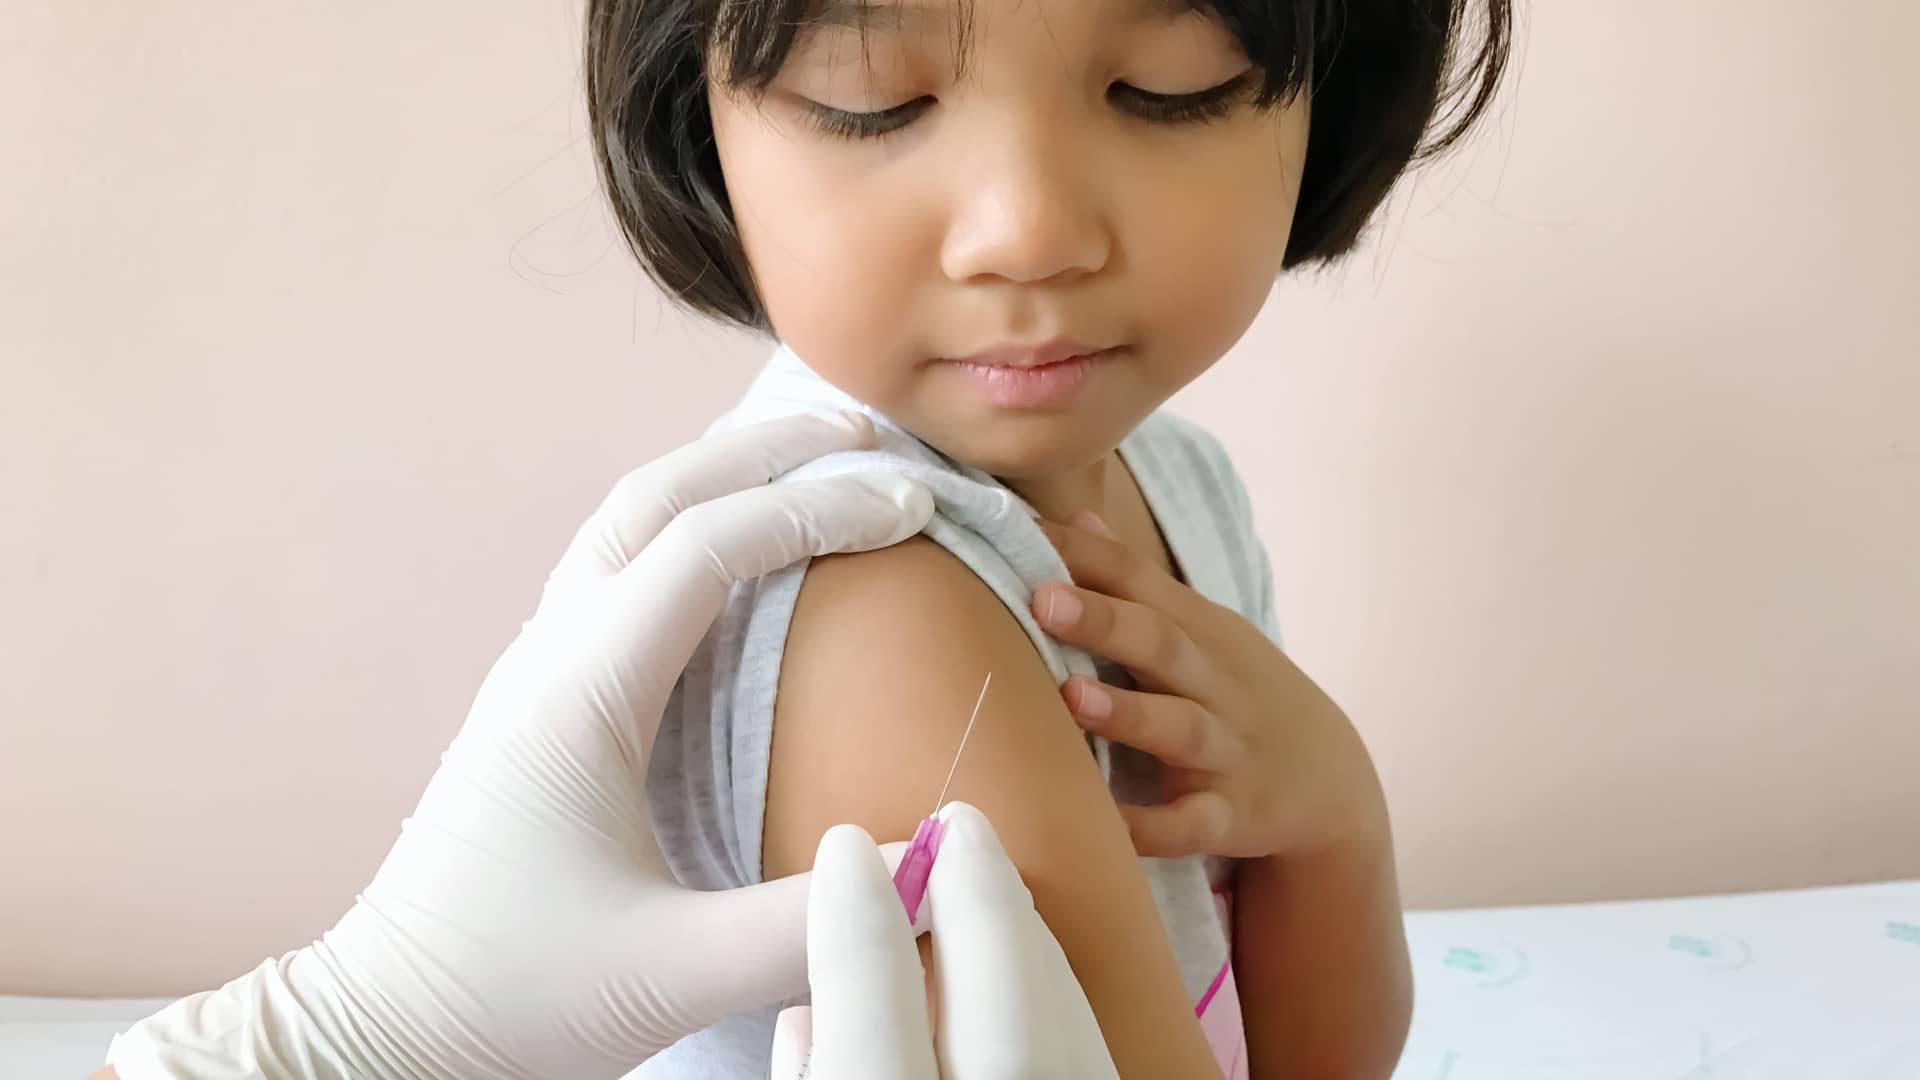 Vacuna de los 6 años: Difteria-Tétanos-Tosferina, Polio y COVID-19